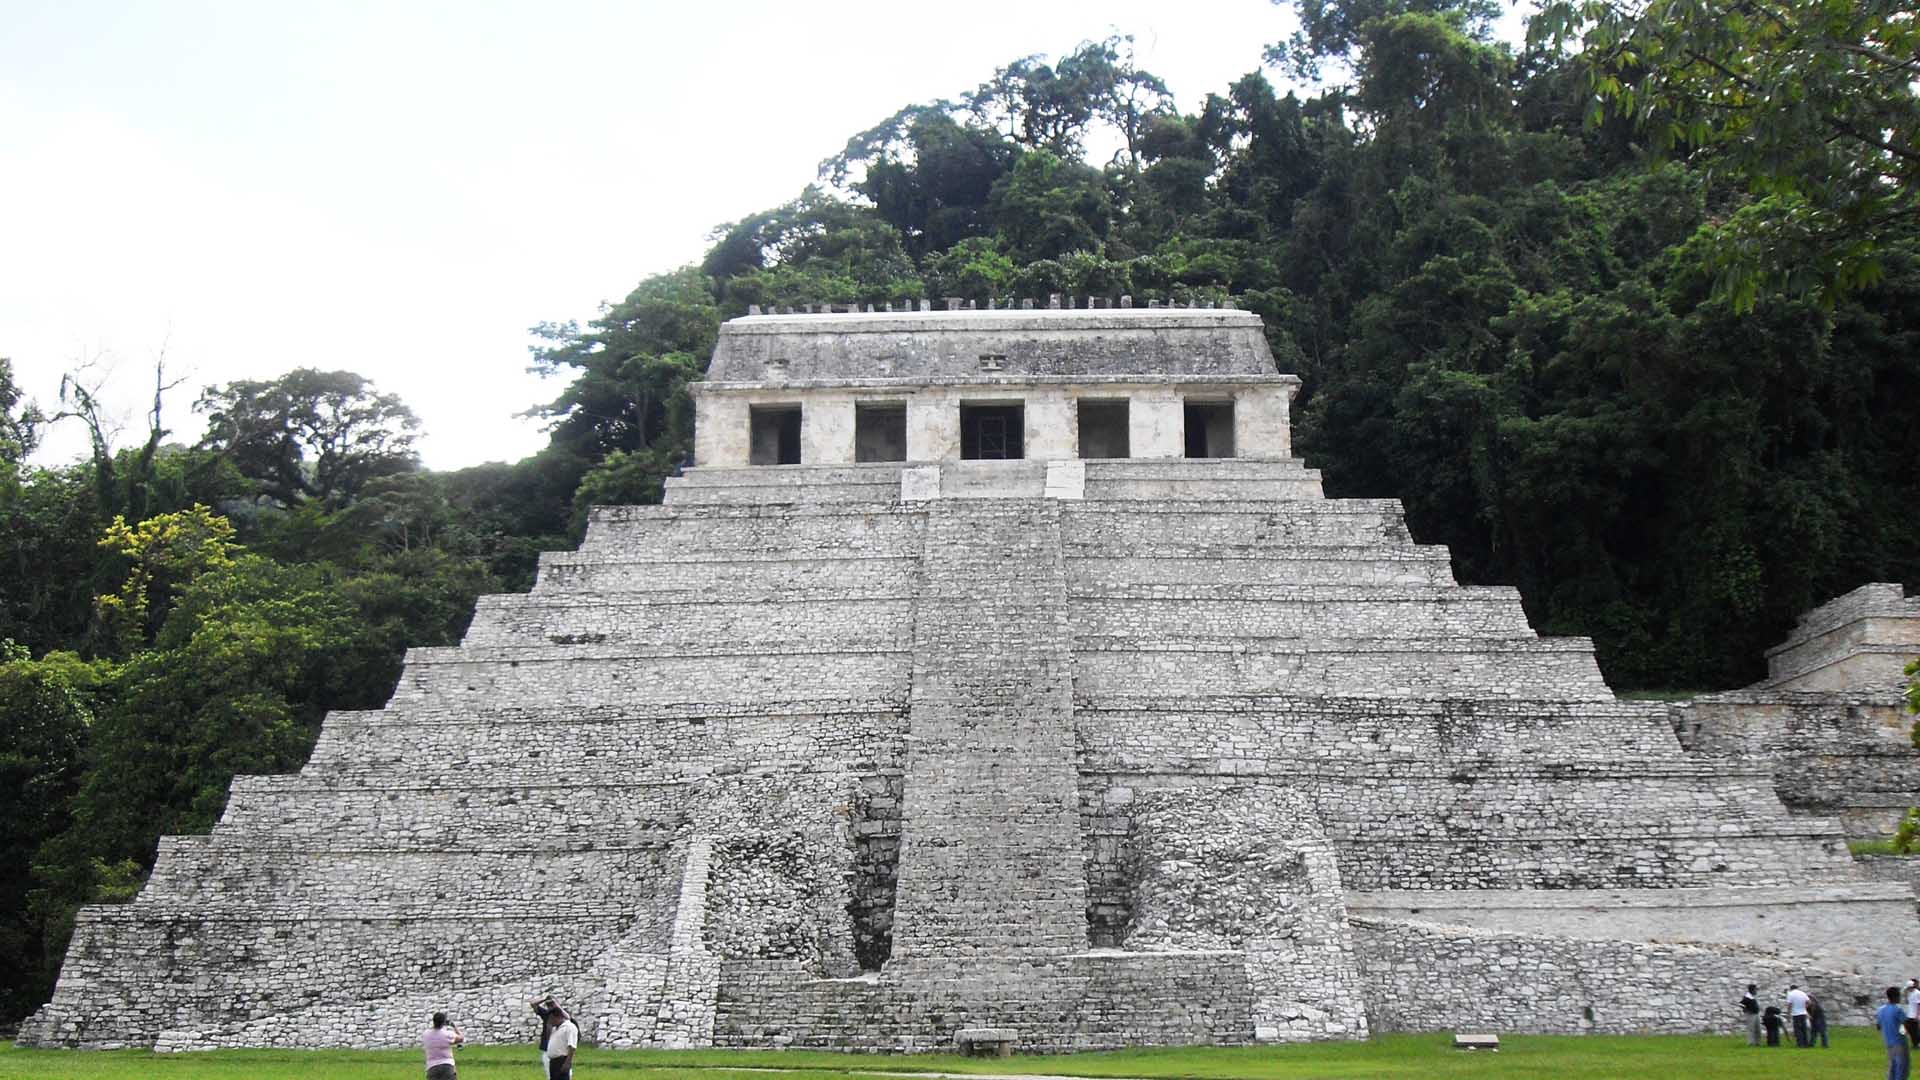 La técnica fue utilizada en el Templo de las Inscripciones, sin embargo, es más antiguo que la pirámide